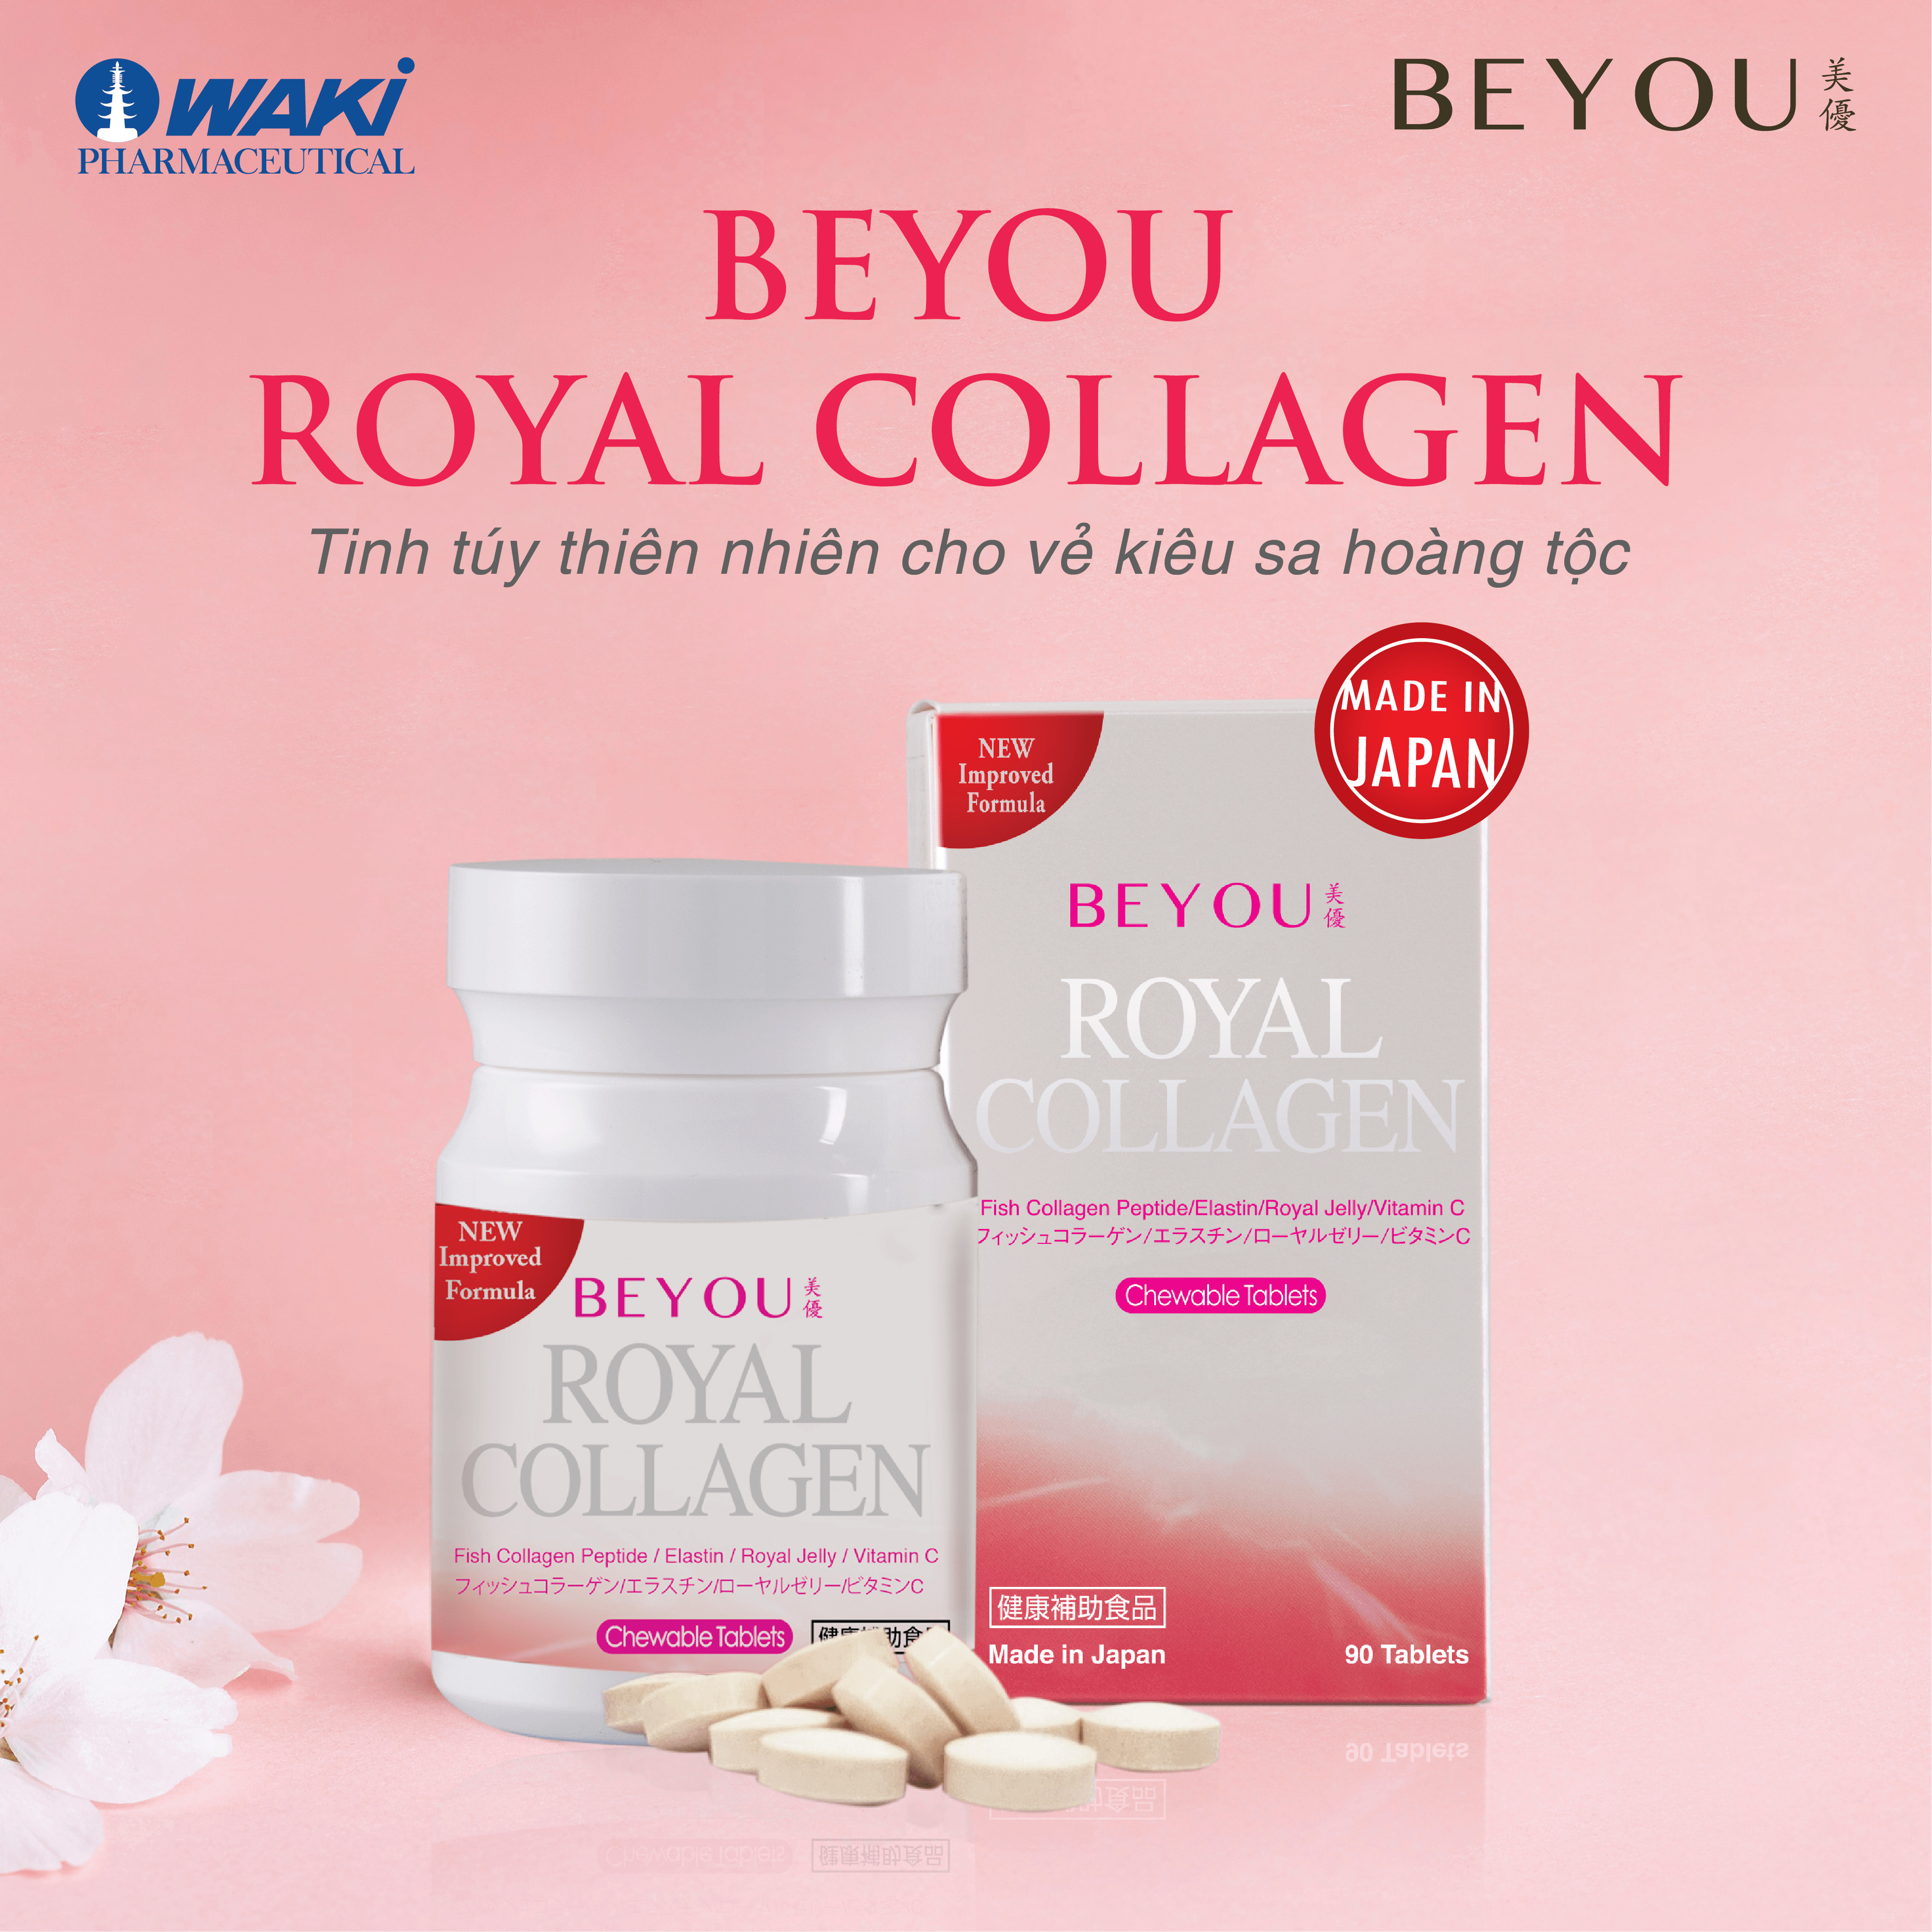 BEYOU Royal Collagen - Làm chậm quá trình lão hóa da, tăng độ đàn hồi cho da